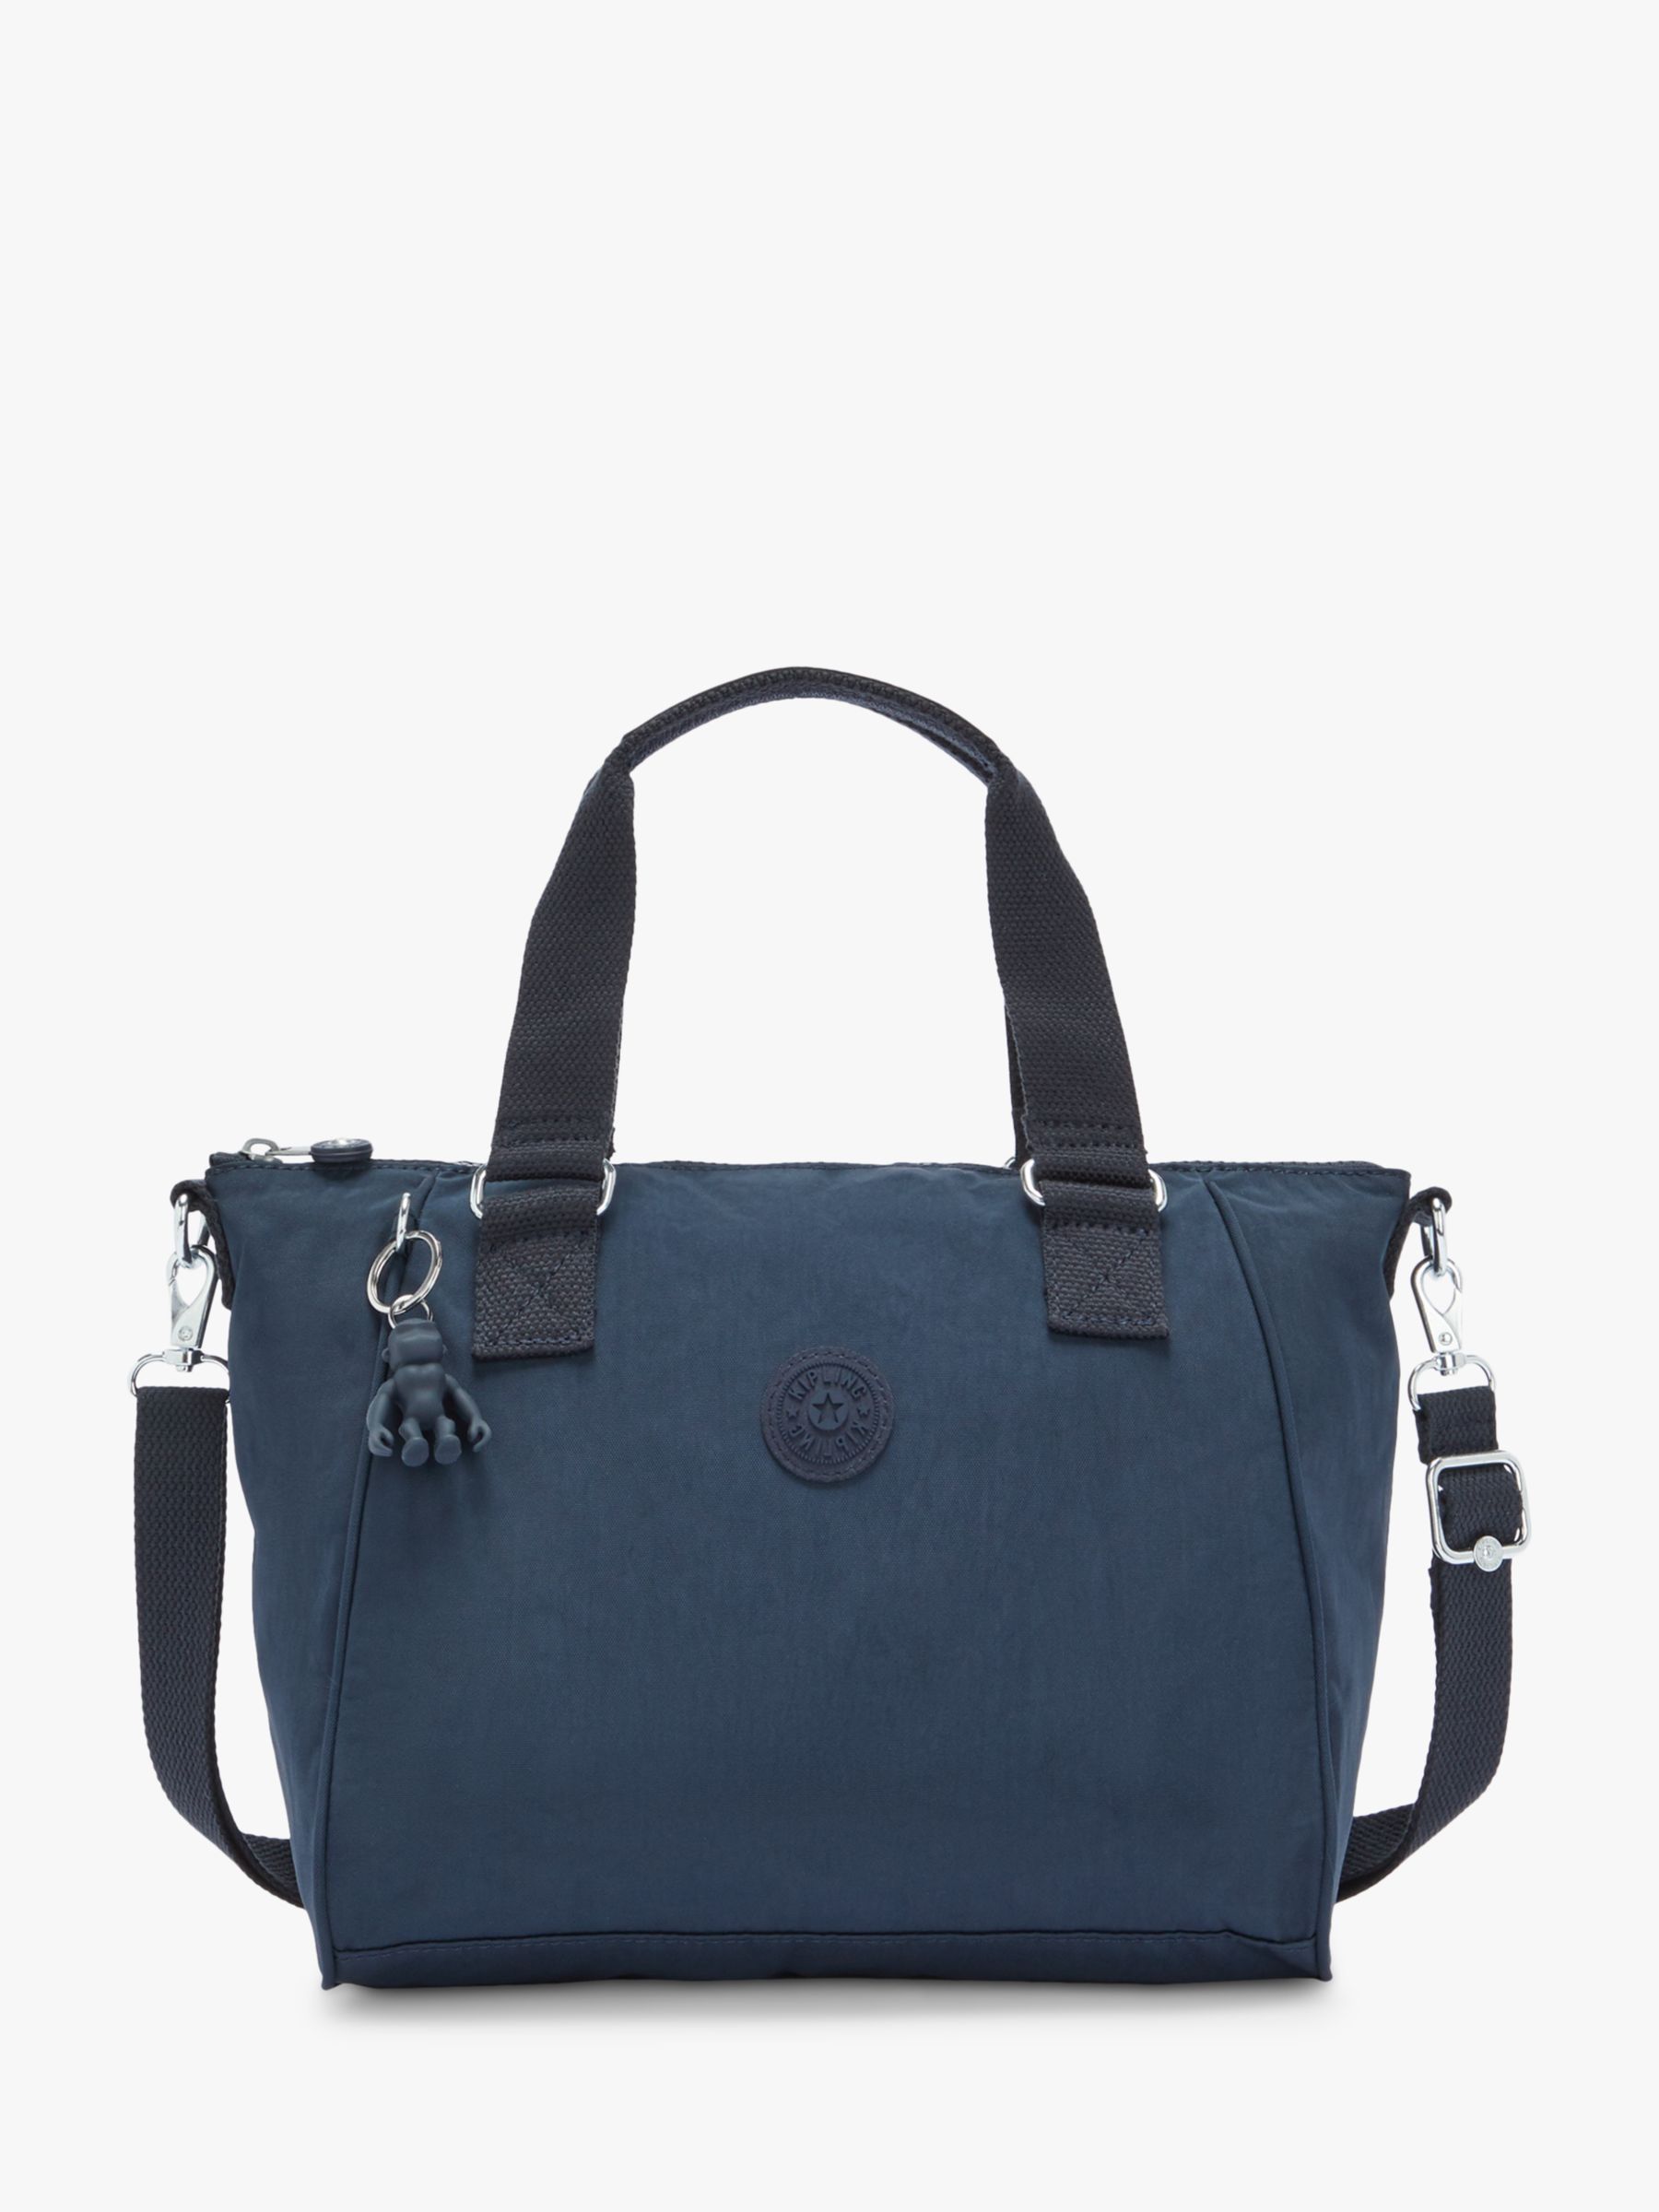 Kipling Amiel Medium Handbag, Navy